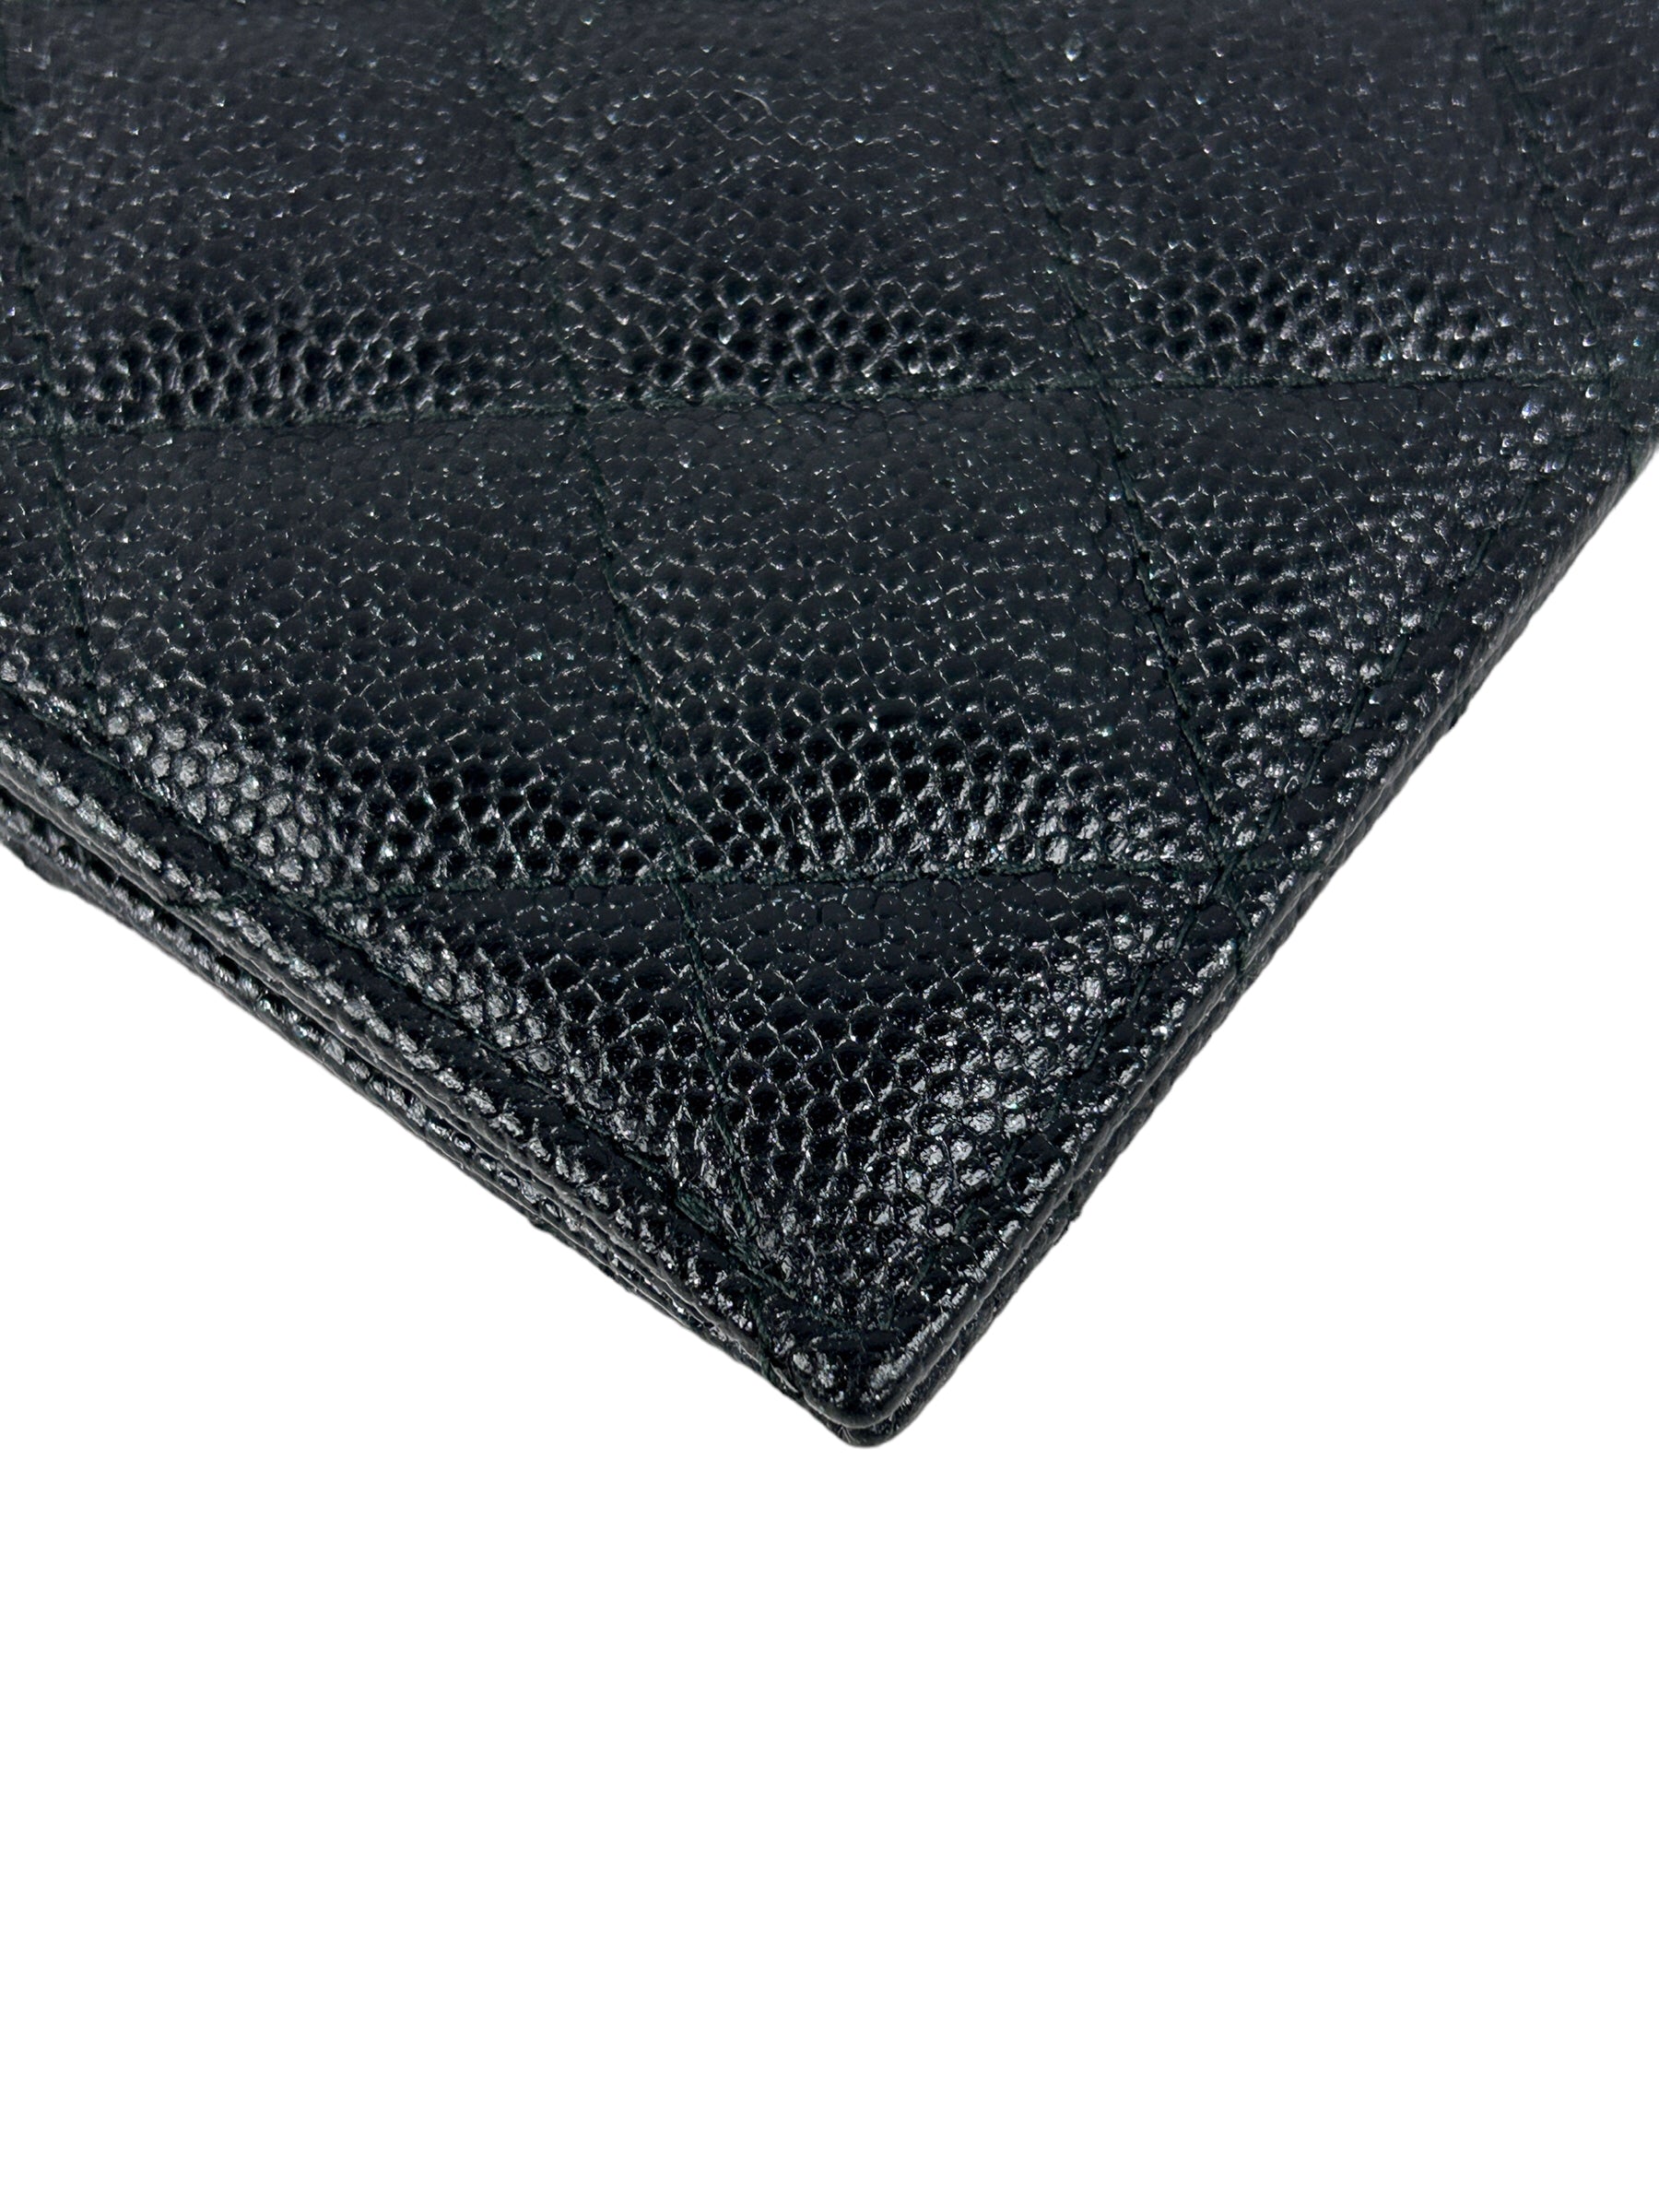 18C Black Caviar Quilted O-card case w/RHW